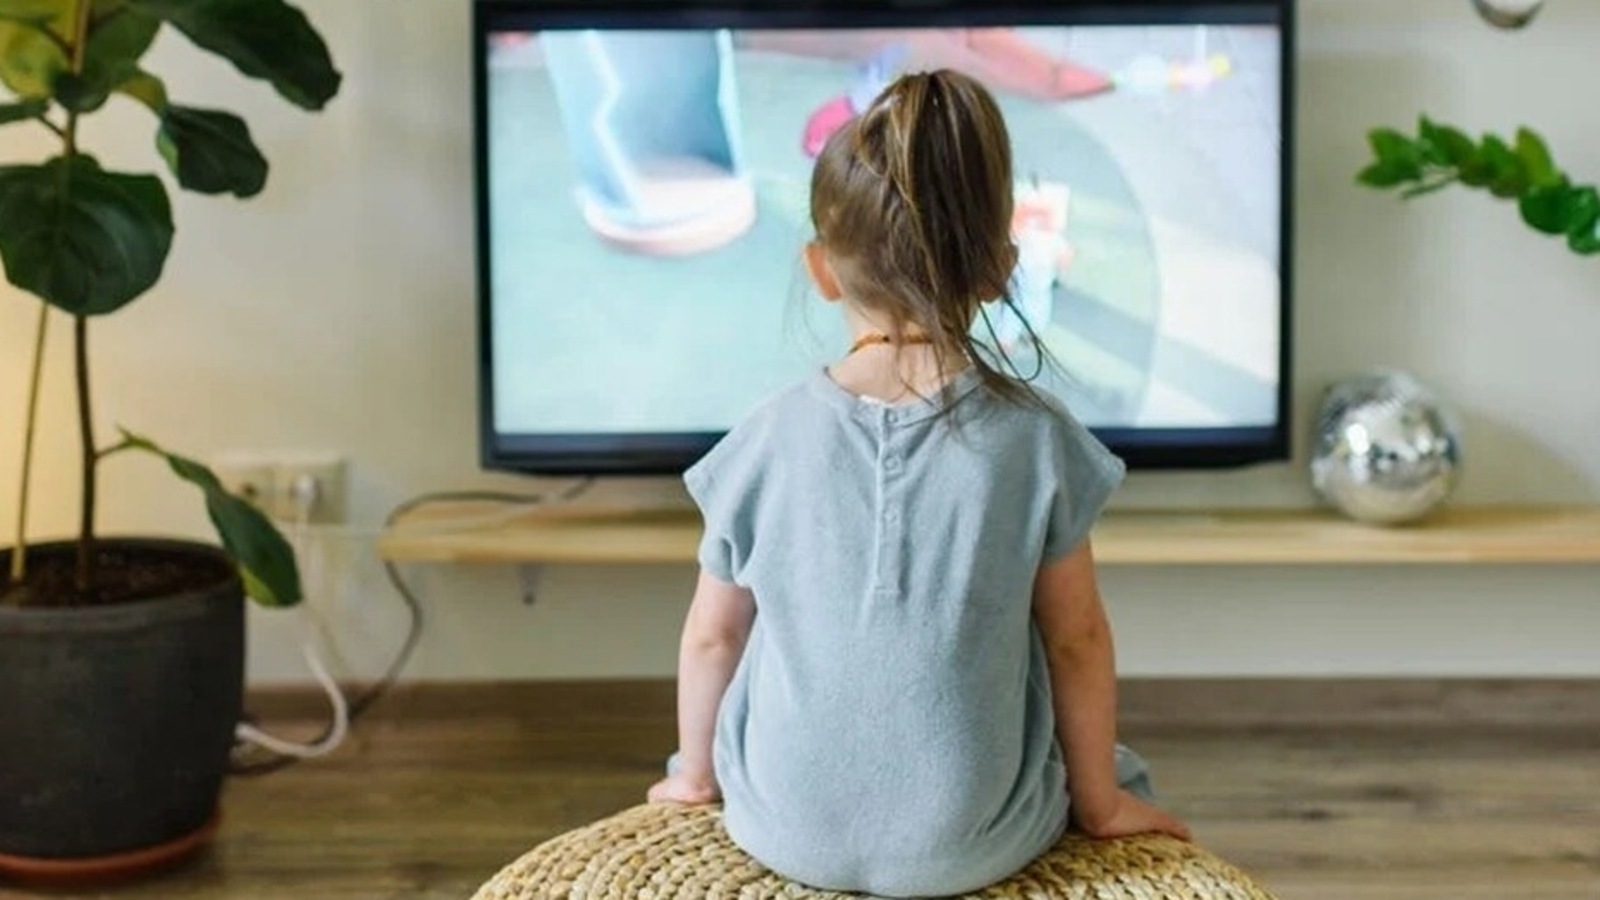 El exceso de tiempo de pantalla para los niños plantea riesgos para la salud: estudio |  la salud